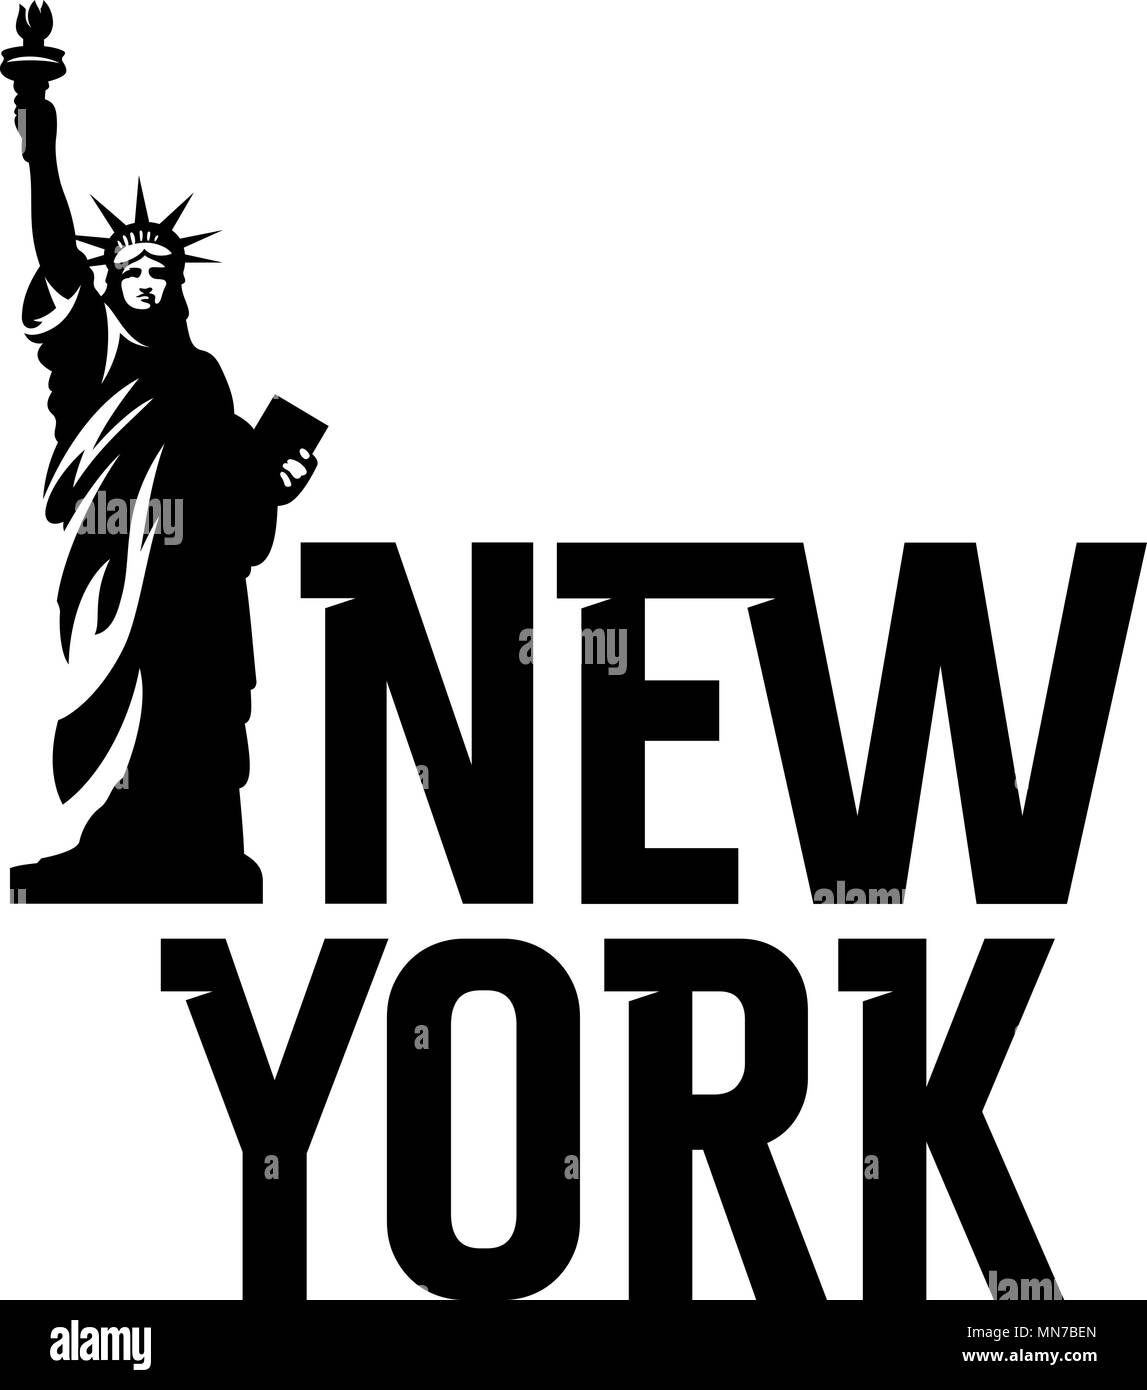 Schriftzug "New York" und die Freiheitsstatue. T-shirt Bekleidung Fashion Design Stock Vektor